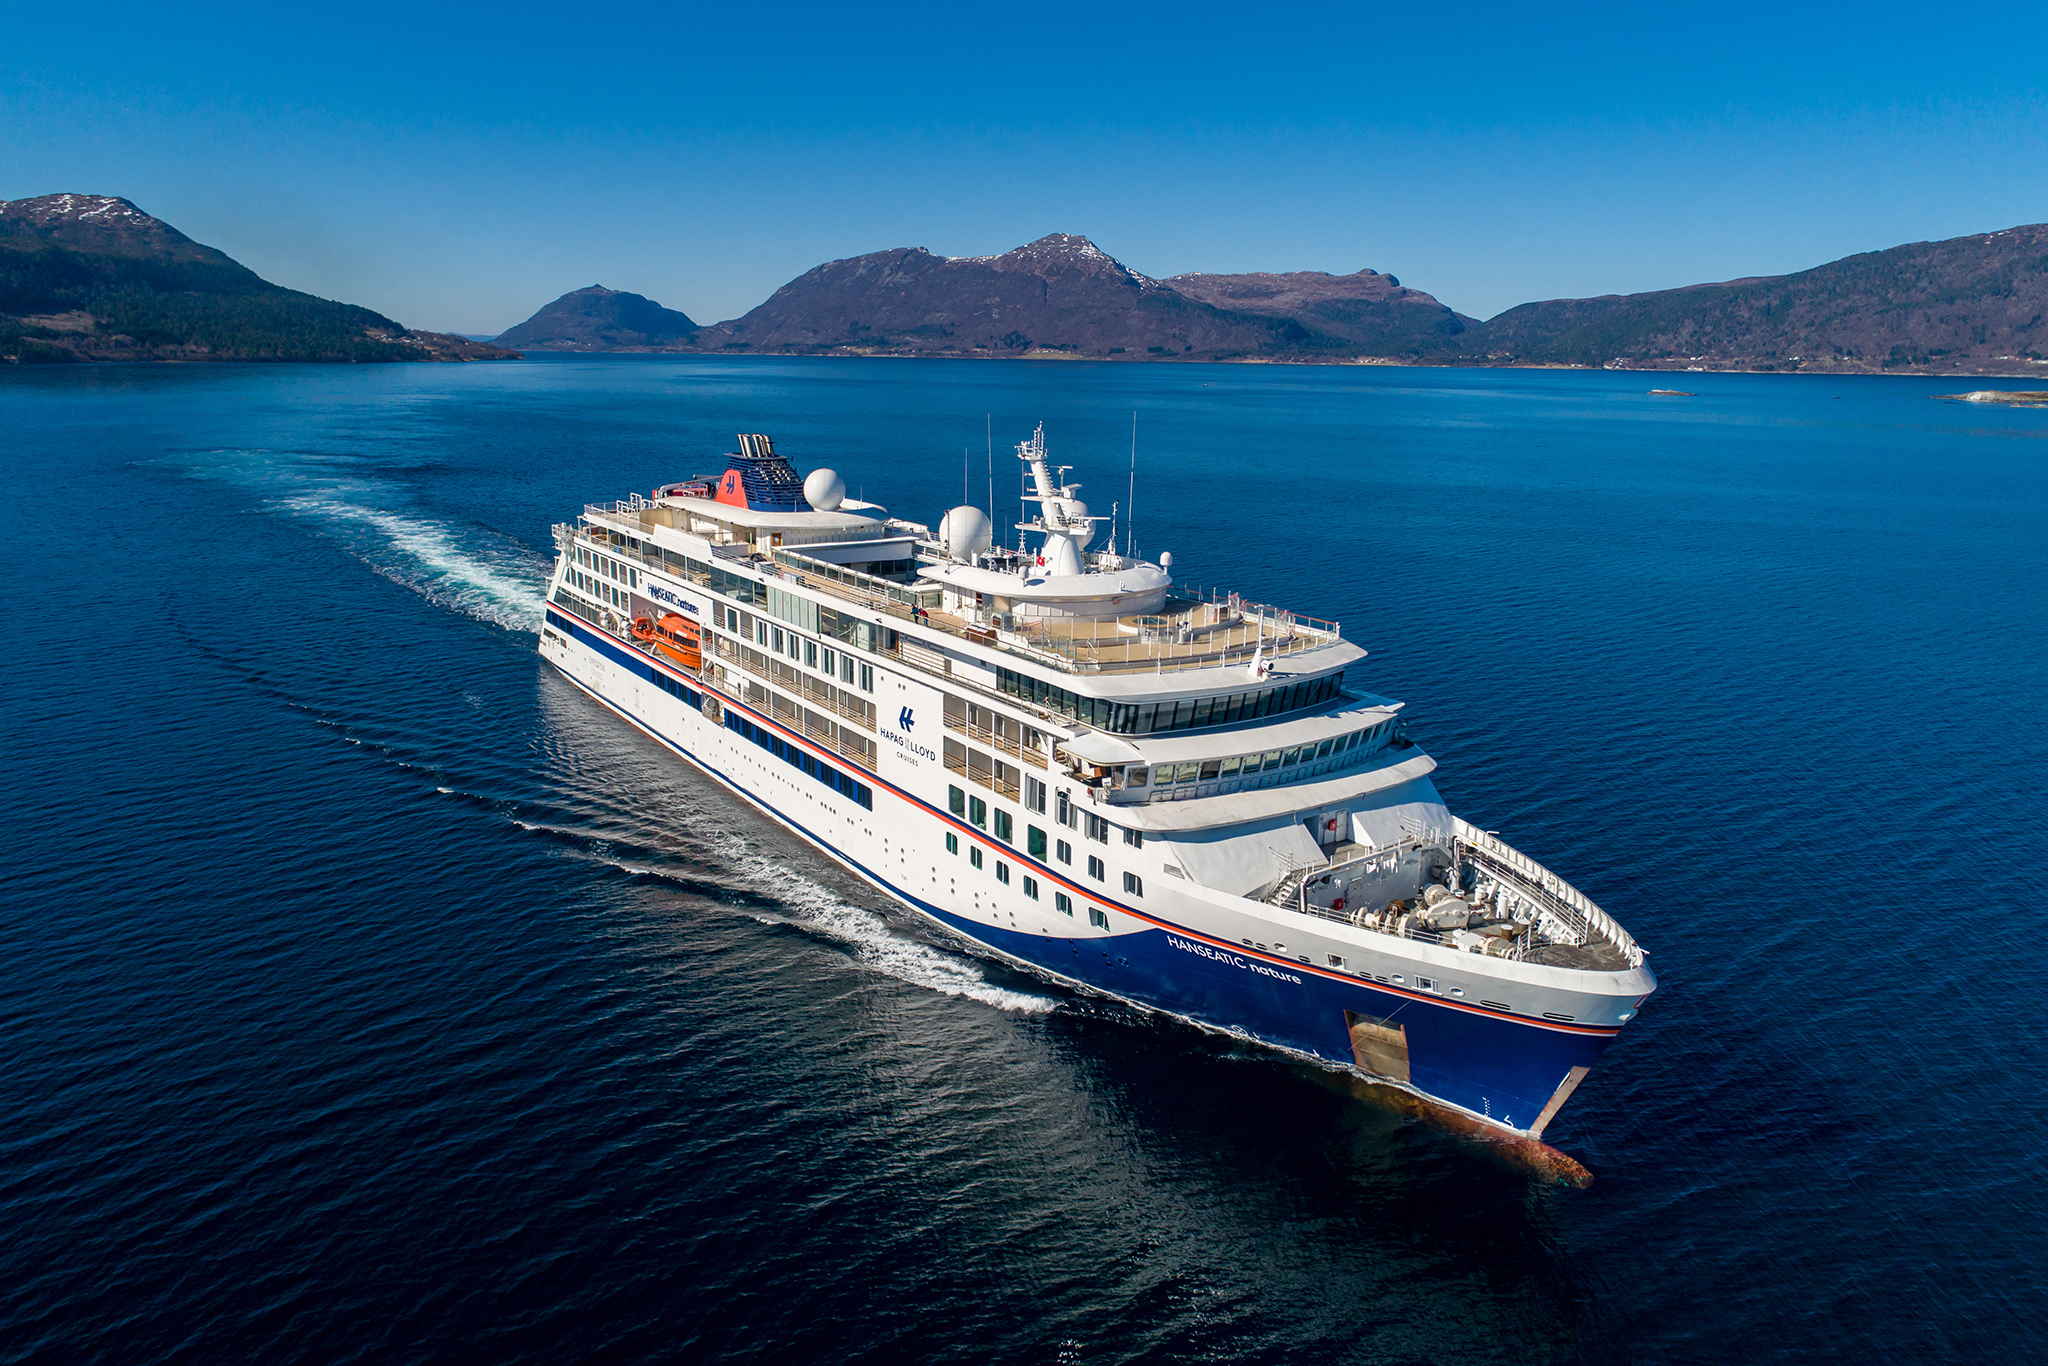 Der Flottenzuwachs von Hapag-Lloyd Cruises, die HANSEATIC nature, auf Platz eins der Kategorie Boutiqueschiffe mit 50 bis 250 Passagieren